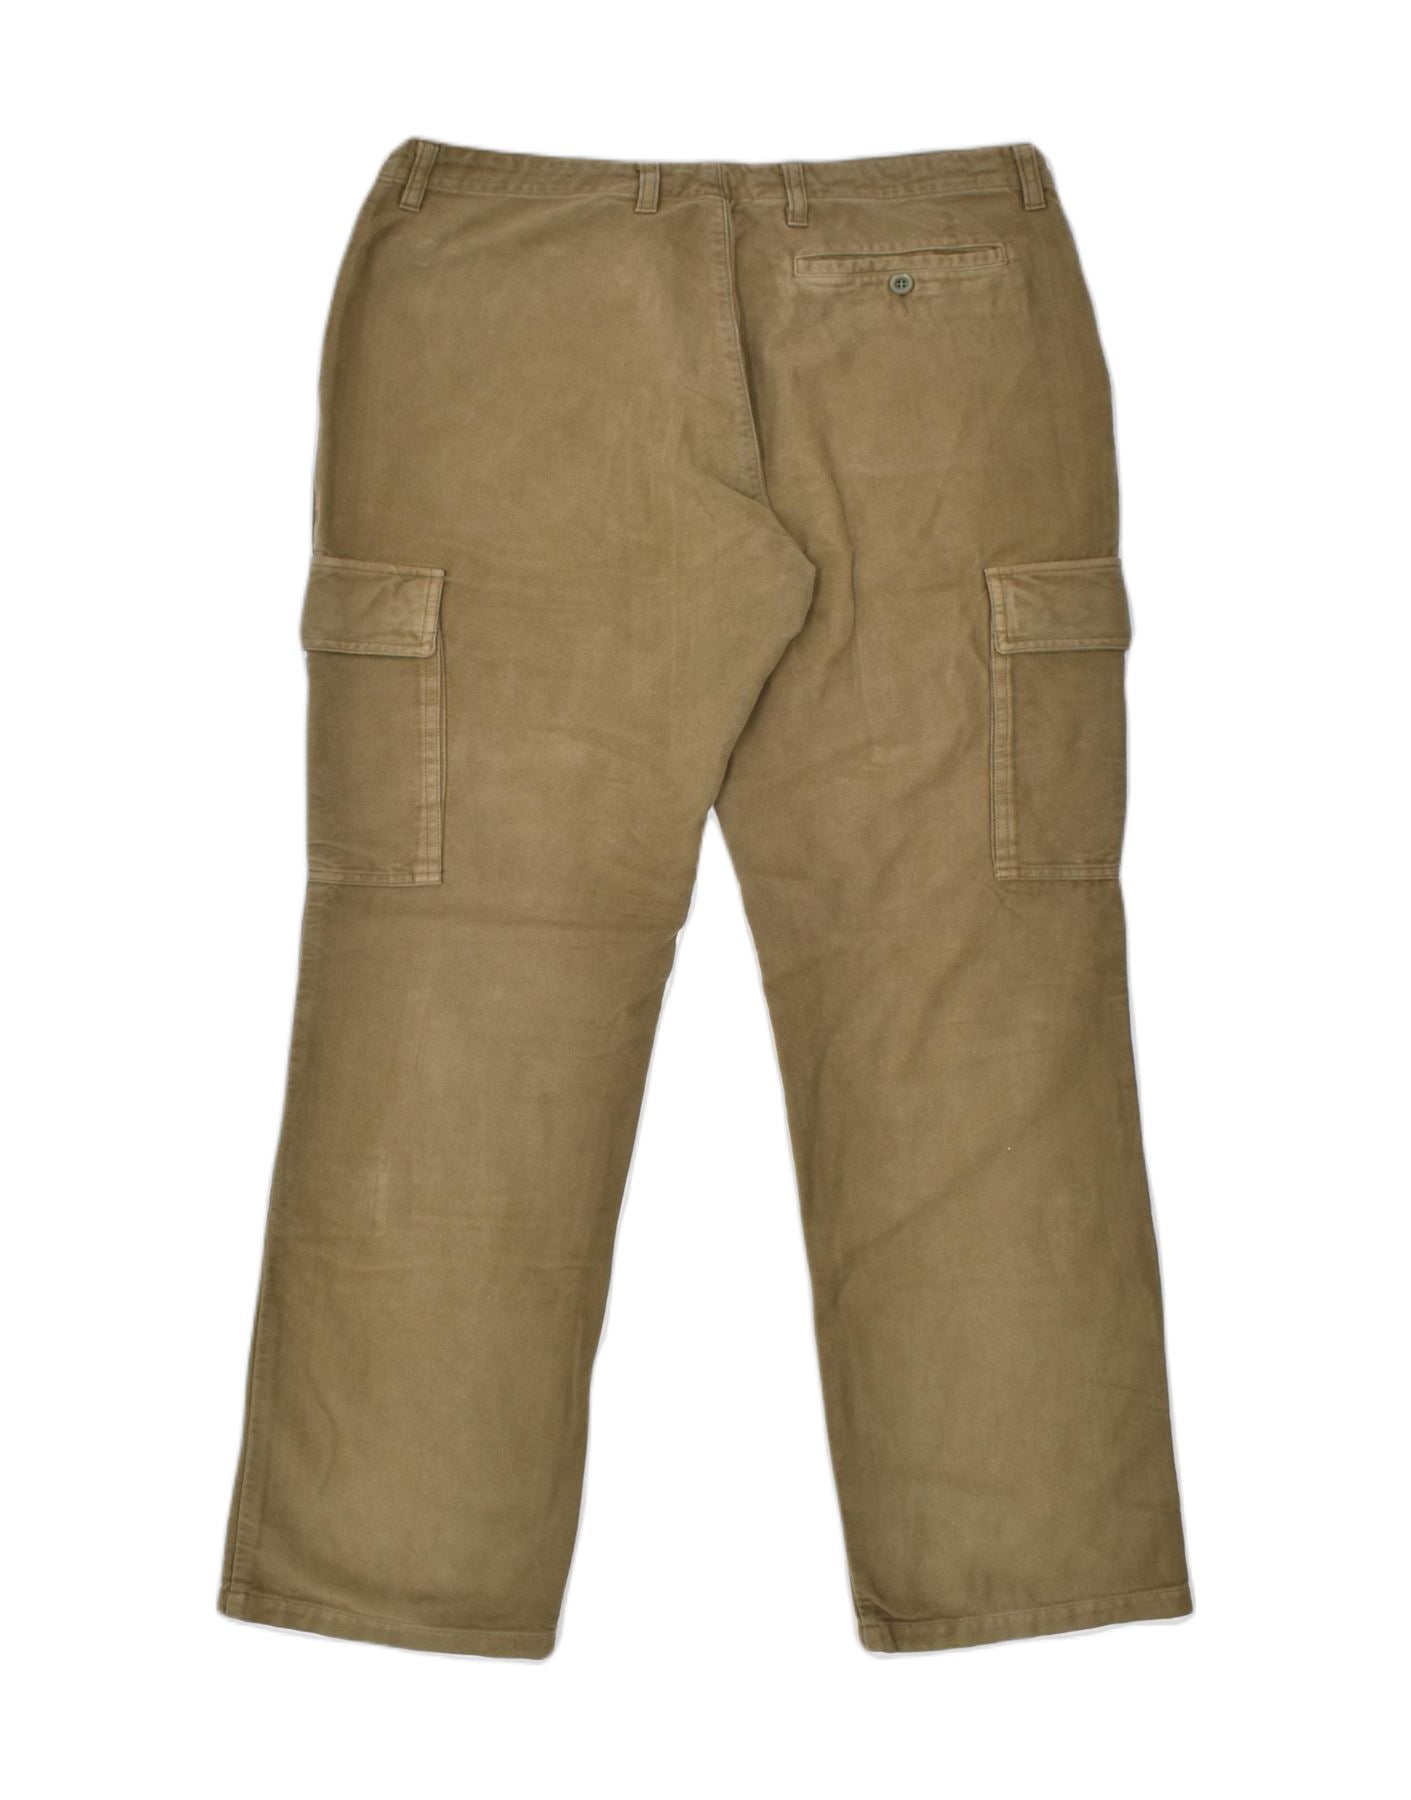 Sisley Men's Trousers, Brown 911, 56: Buy Online at Best Price in UAE -  Amazon.ae